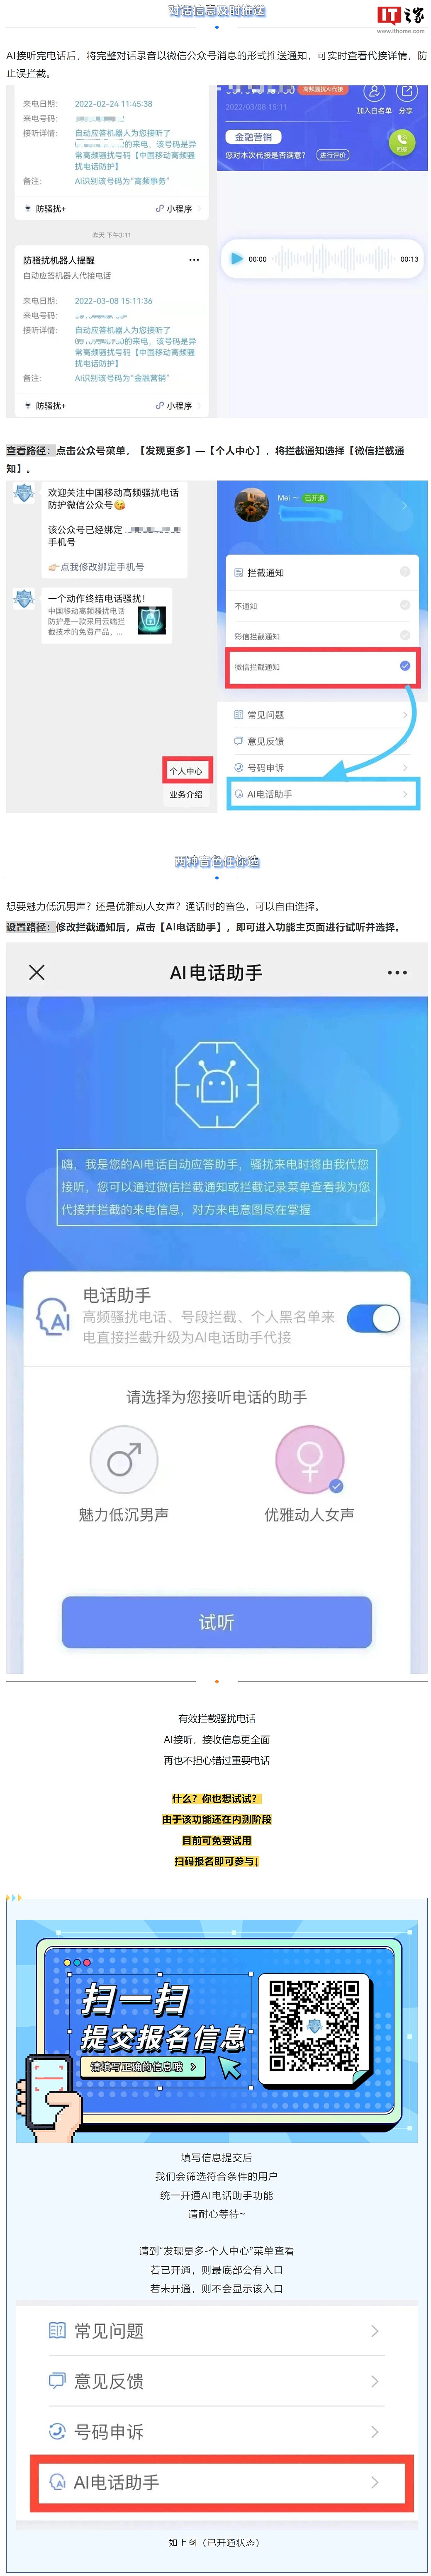 中国移动测试 AI 电话助手功能，可代替接听骚扰电话 - 2